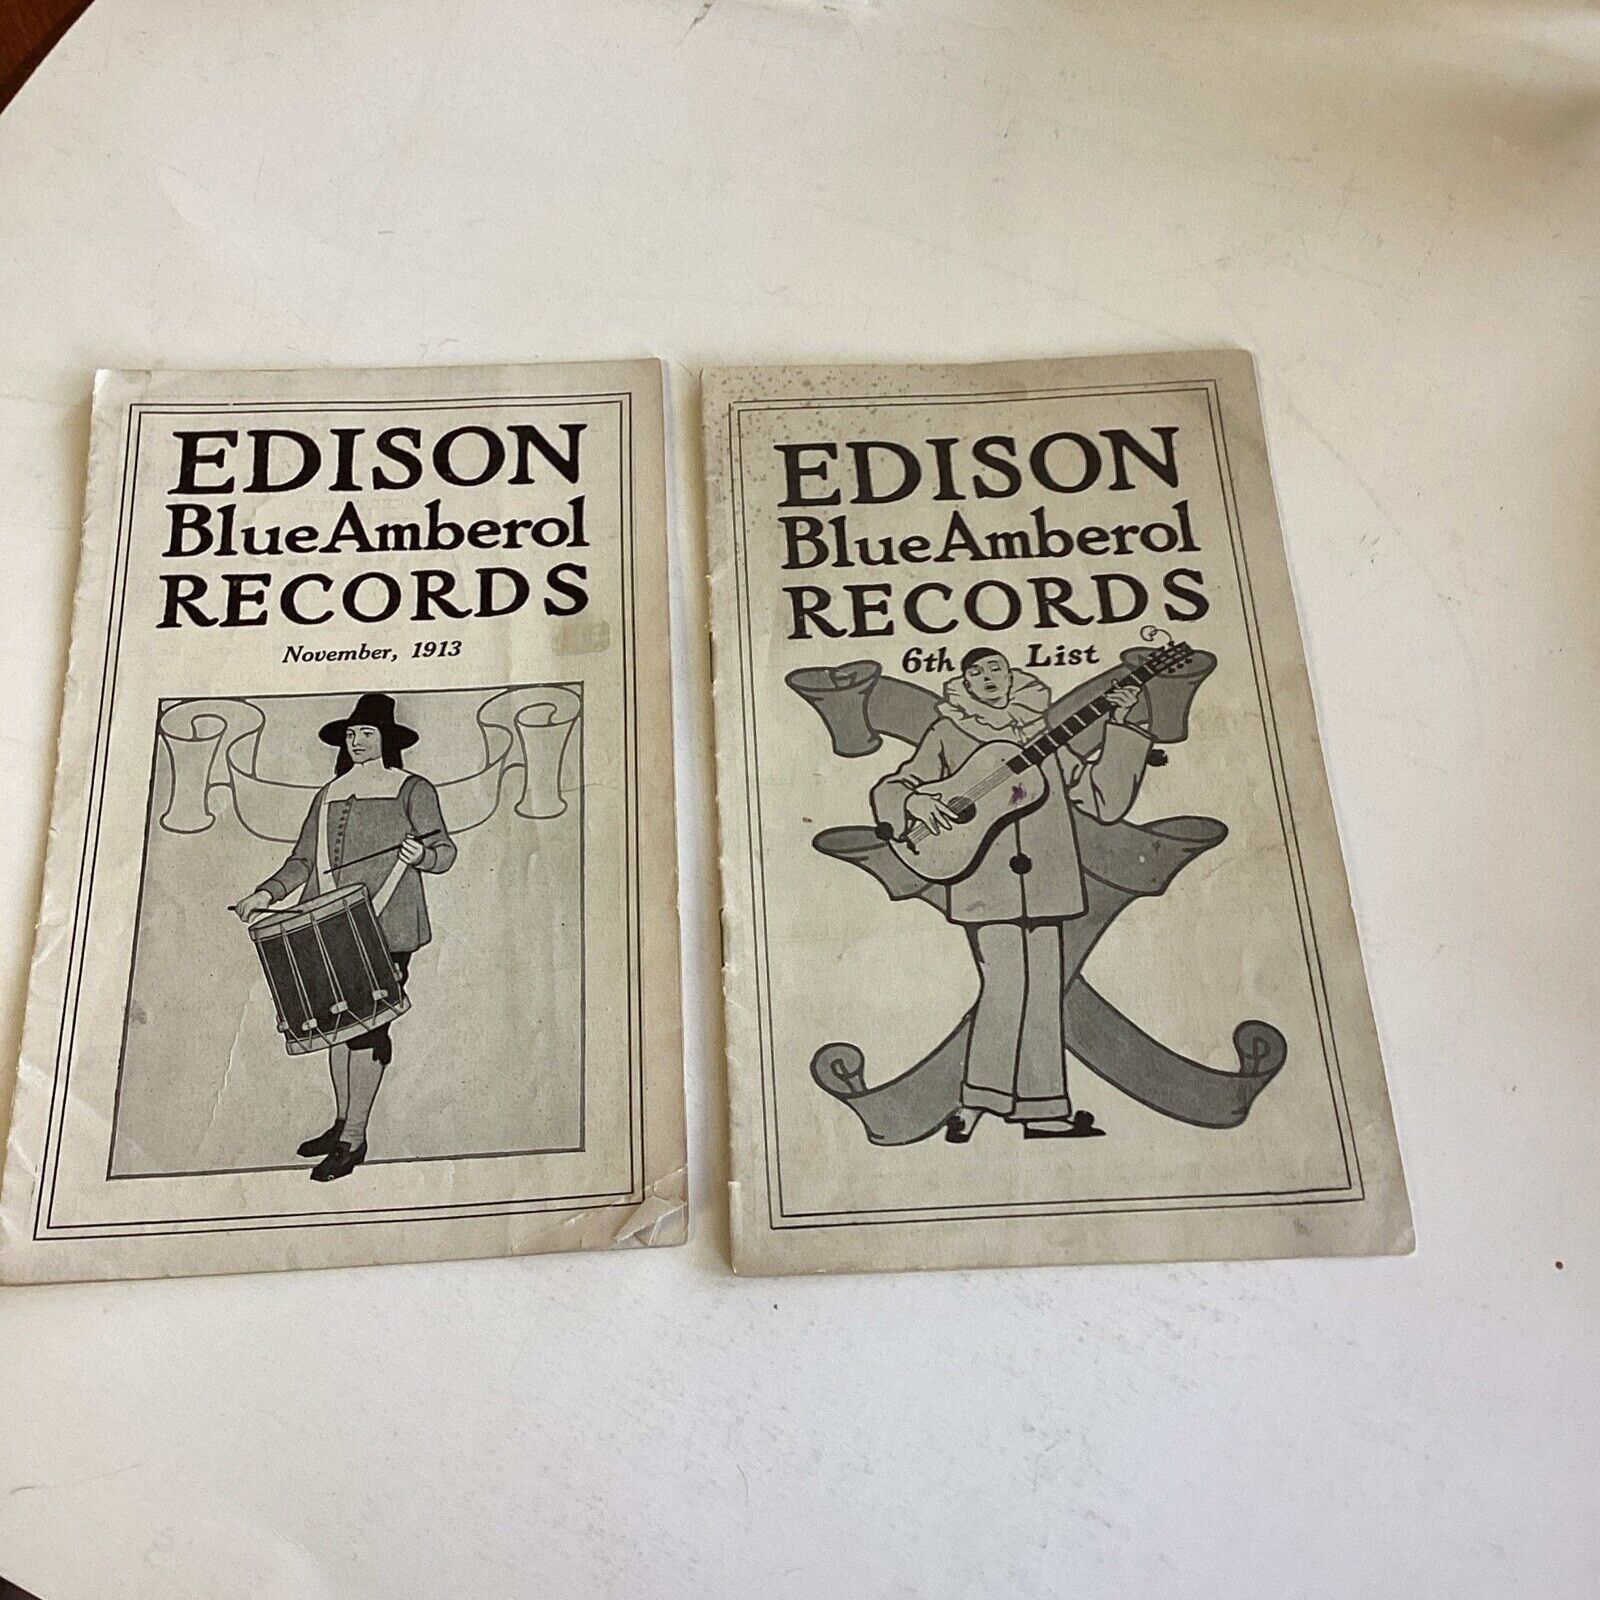 Edison Blue Amberol Records Nov. 1913 & 6th List Booklets, Memorabilia